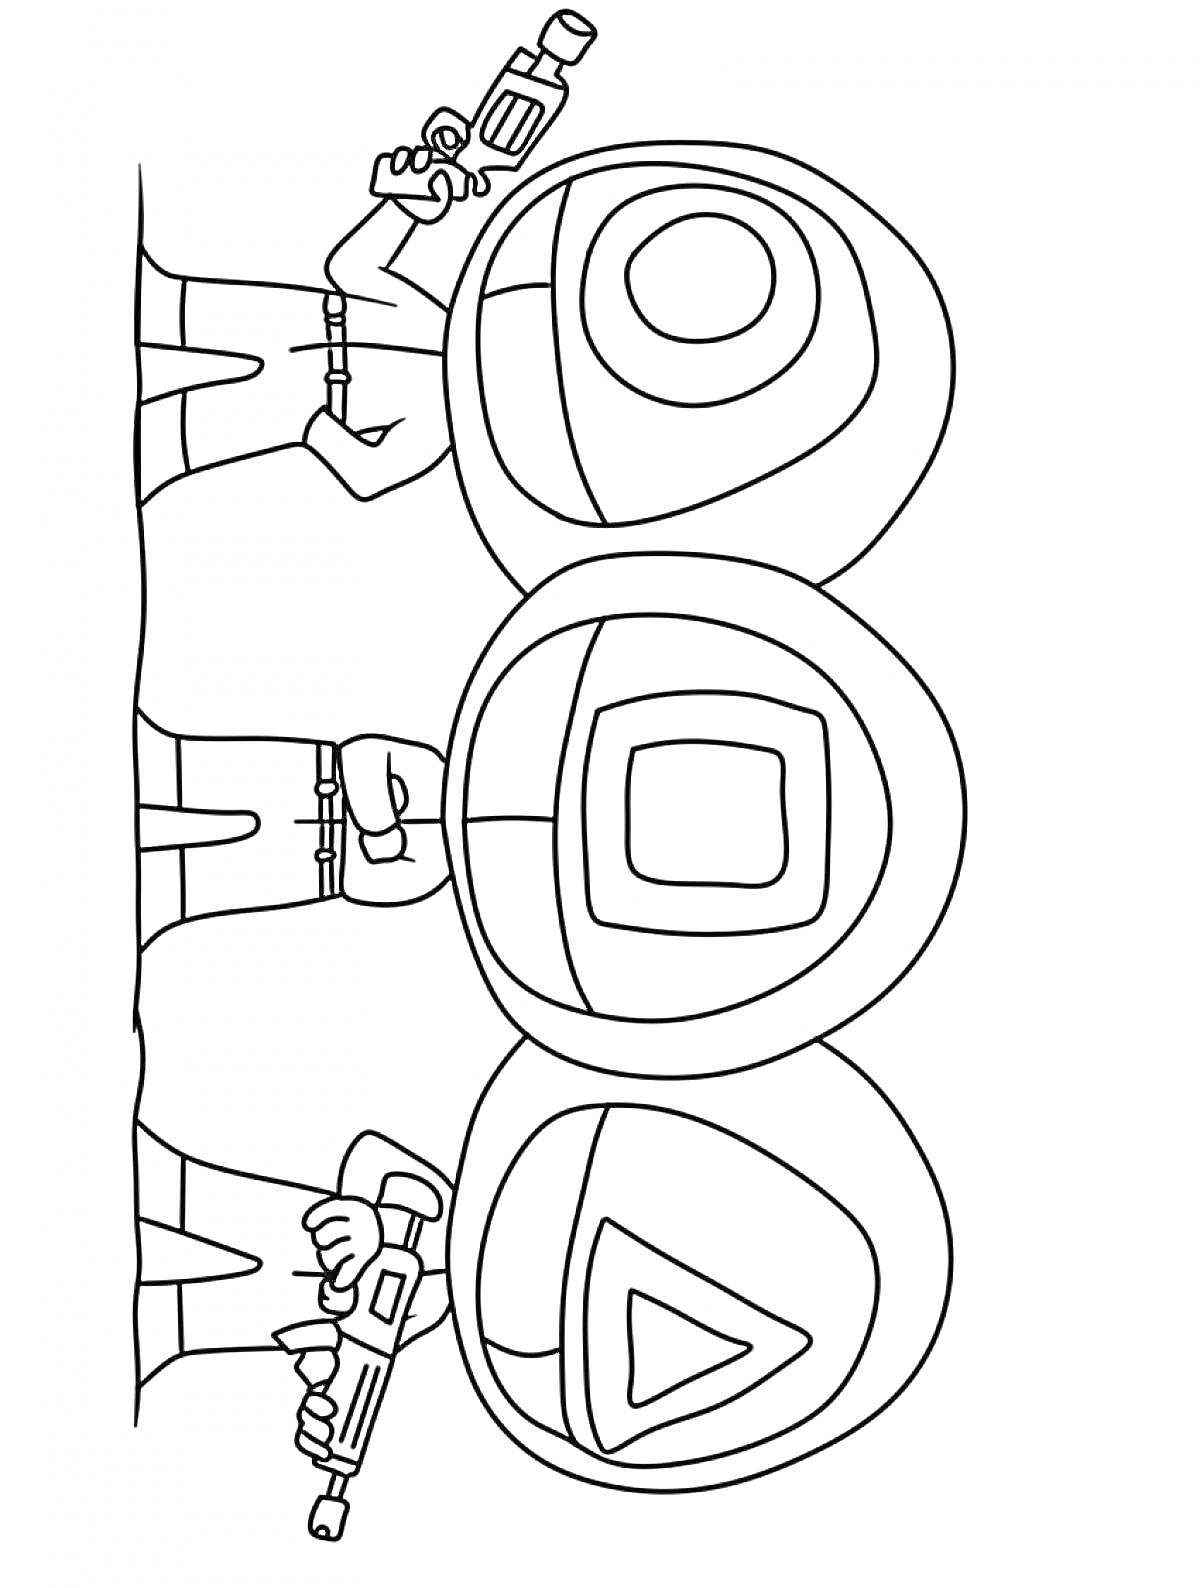 Раскраска Три охранника с масками в форме круга, квадрата и треугольника, держащие оружие